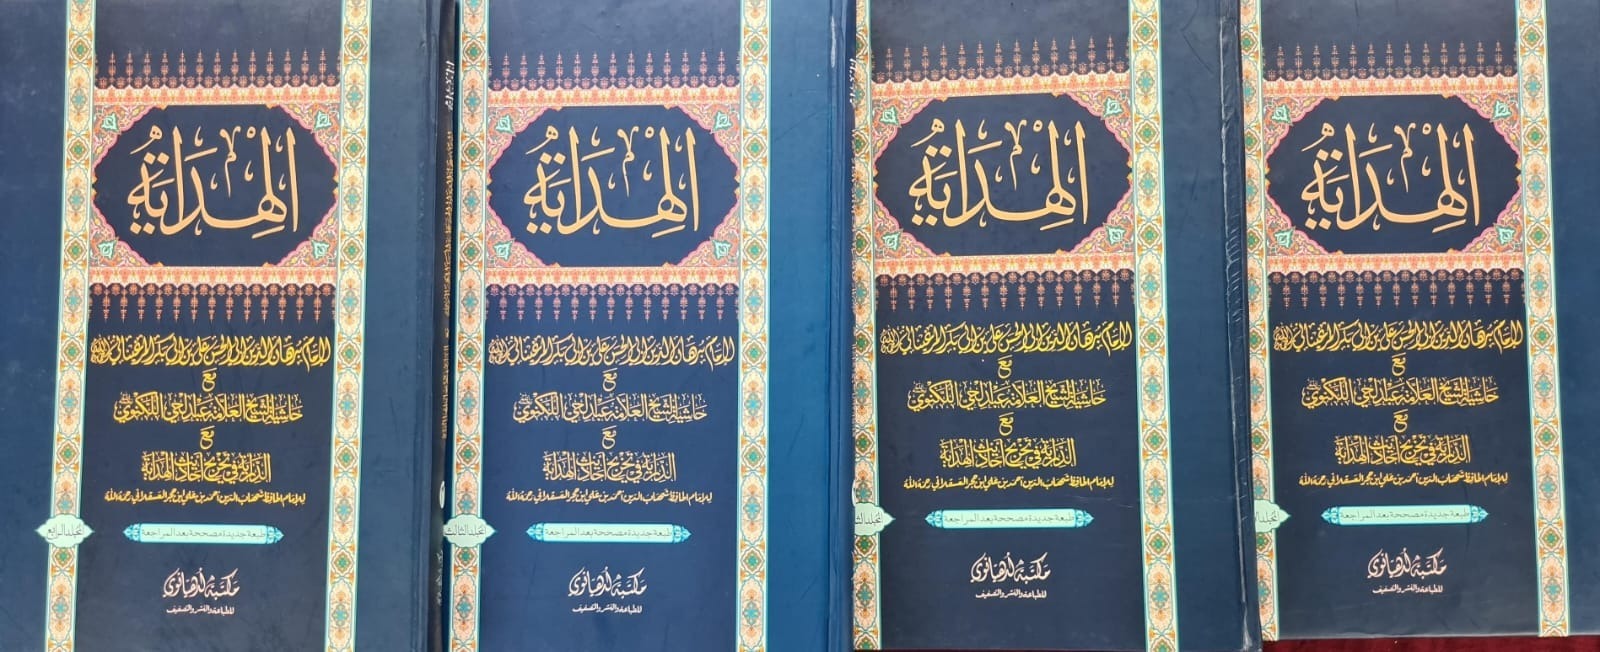 Al Hadayah 4 Jild Set (Maktaba Ludhianvi)